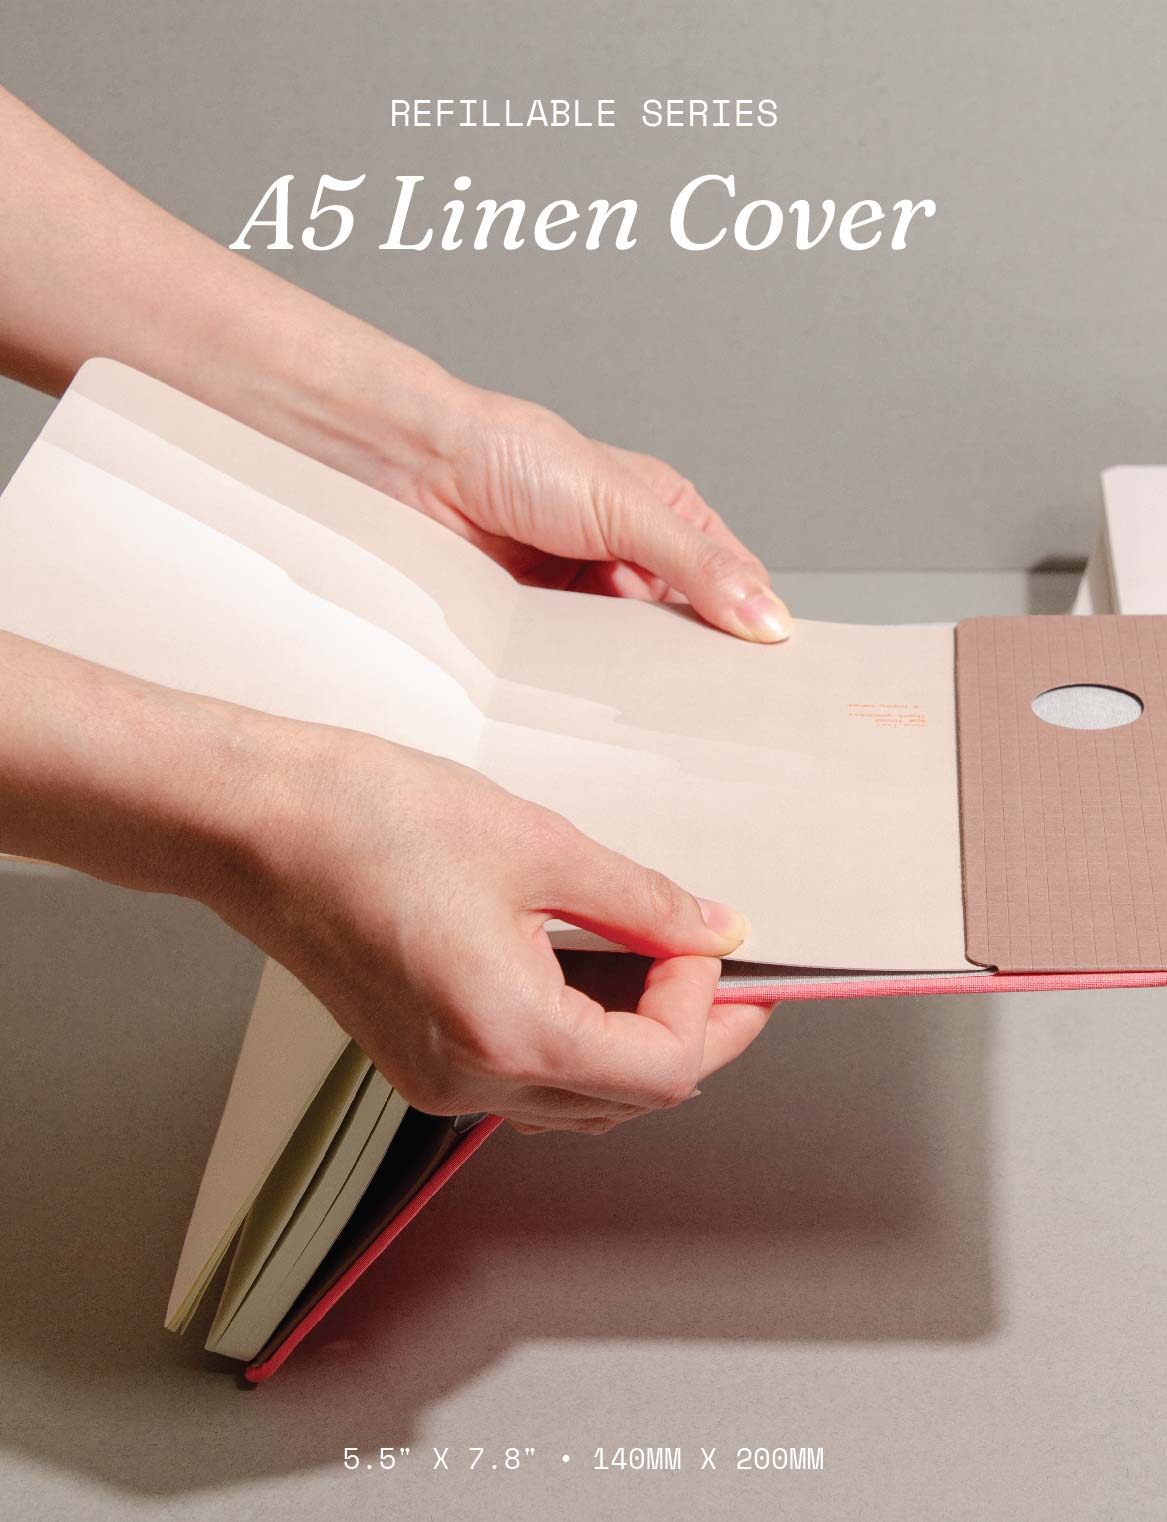 Refillable Linen Cover